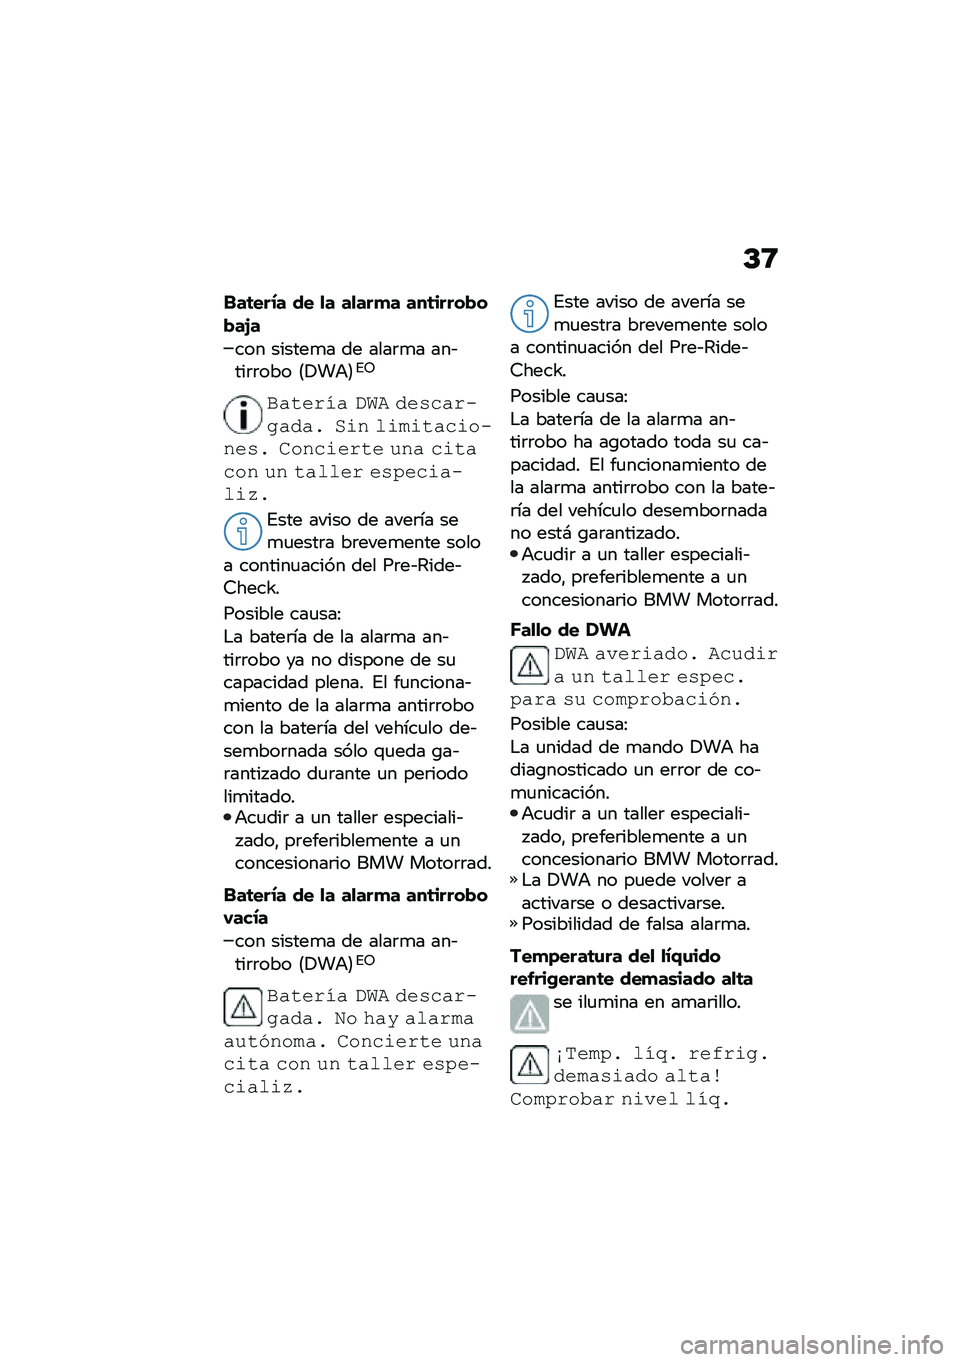 BMW MOTORRAD M 1000 RR 2021  Manual de instrucciones (in Spanish) �D�<
���	���.� �� �
� ��
���
� ���	�����!��!��H�
��� ������
� �� ����	�
� ���&���	�	��� �8�!��+�9�%�5
�#������ �$�%�& �������+�
����  �/�\f�